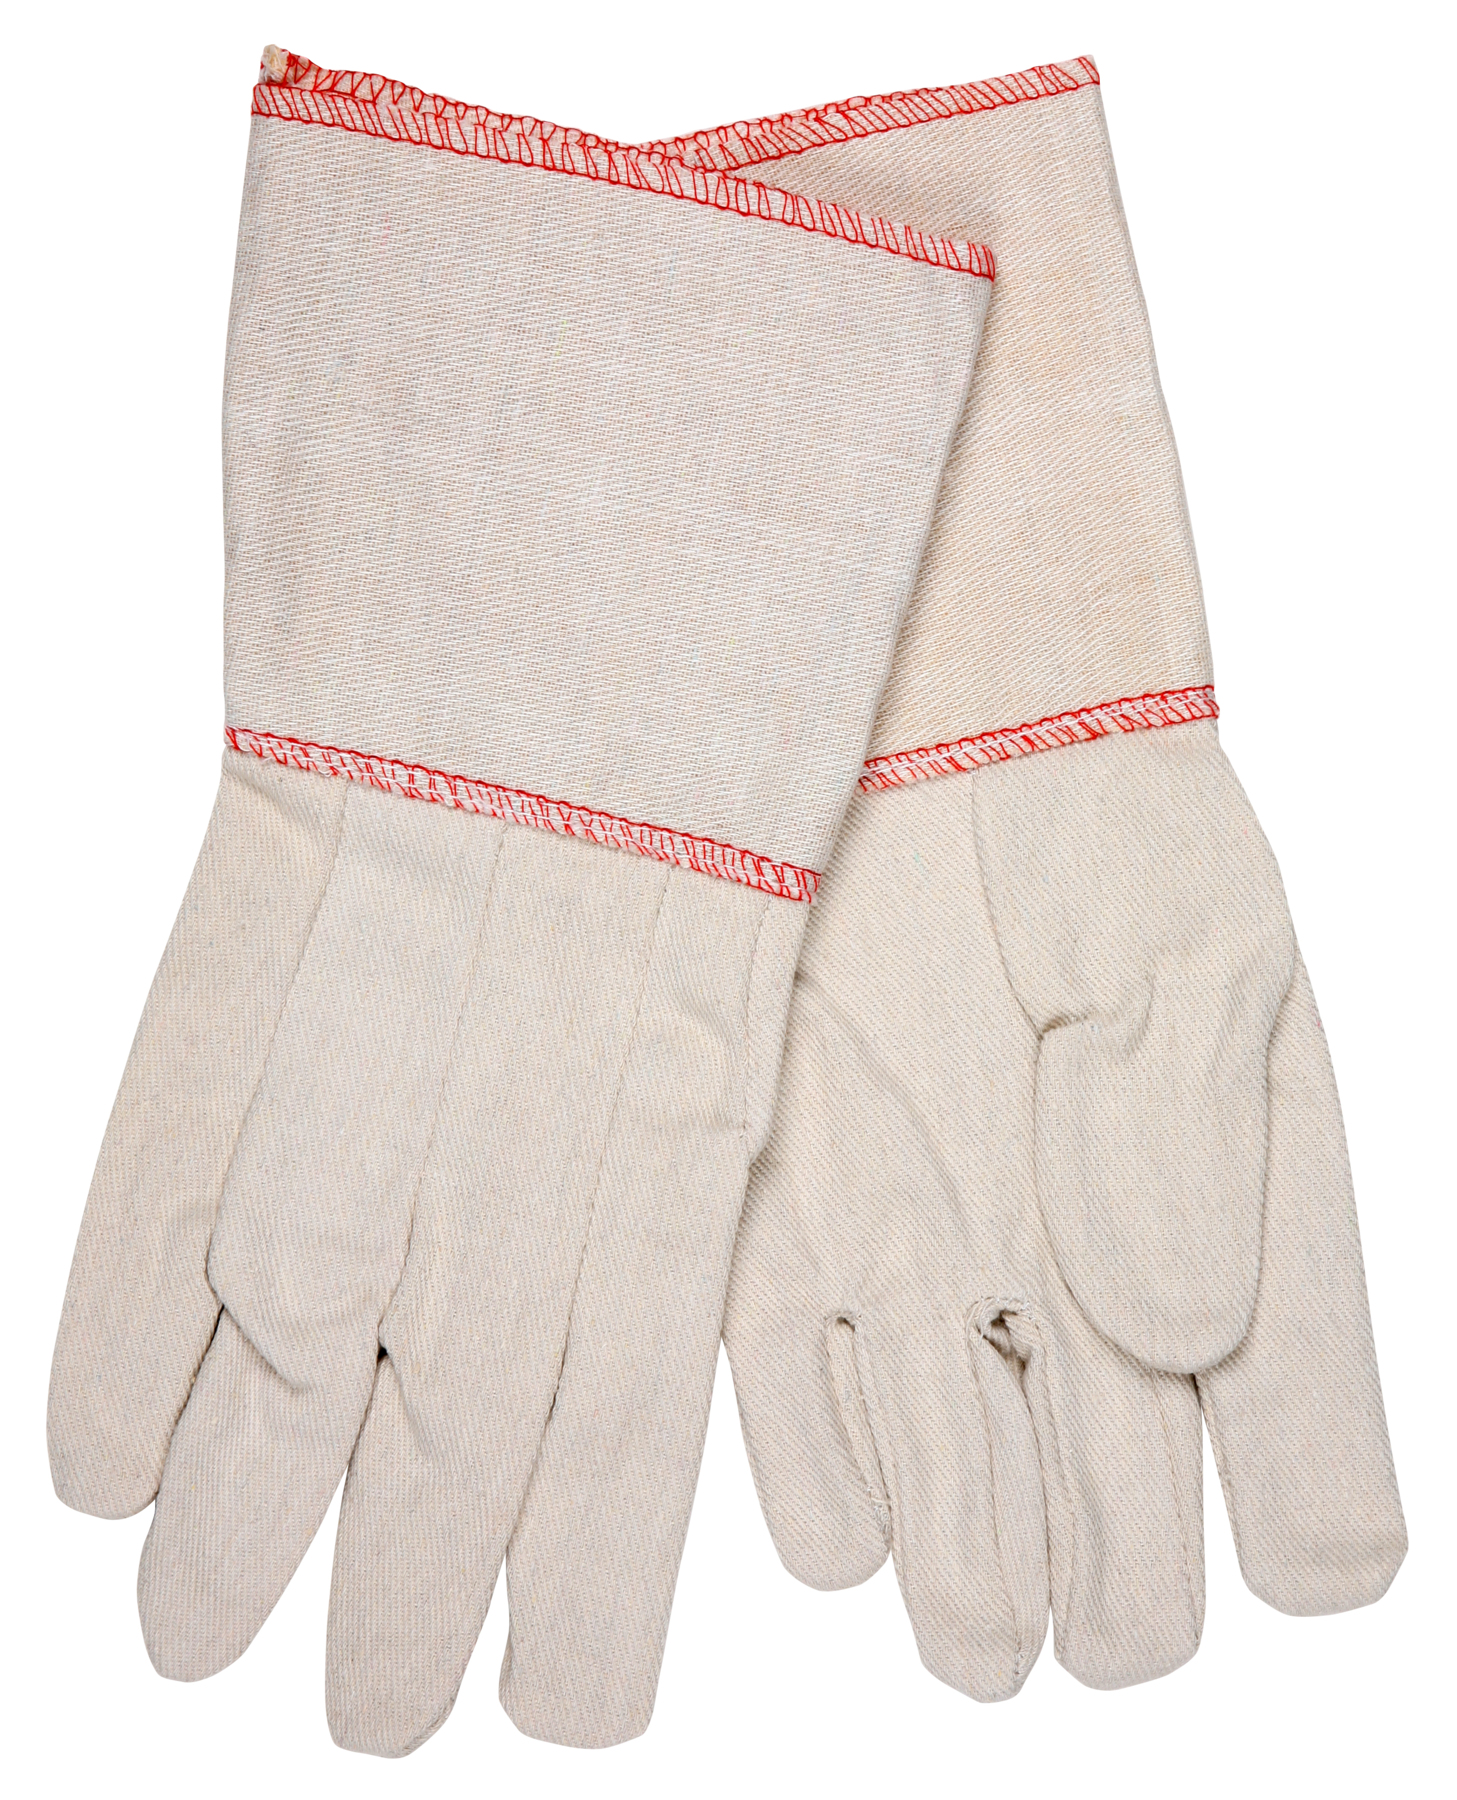 10 OZ COTTON CANVAS GLOVE GAUNTLET CUFF - Tagged Gloves